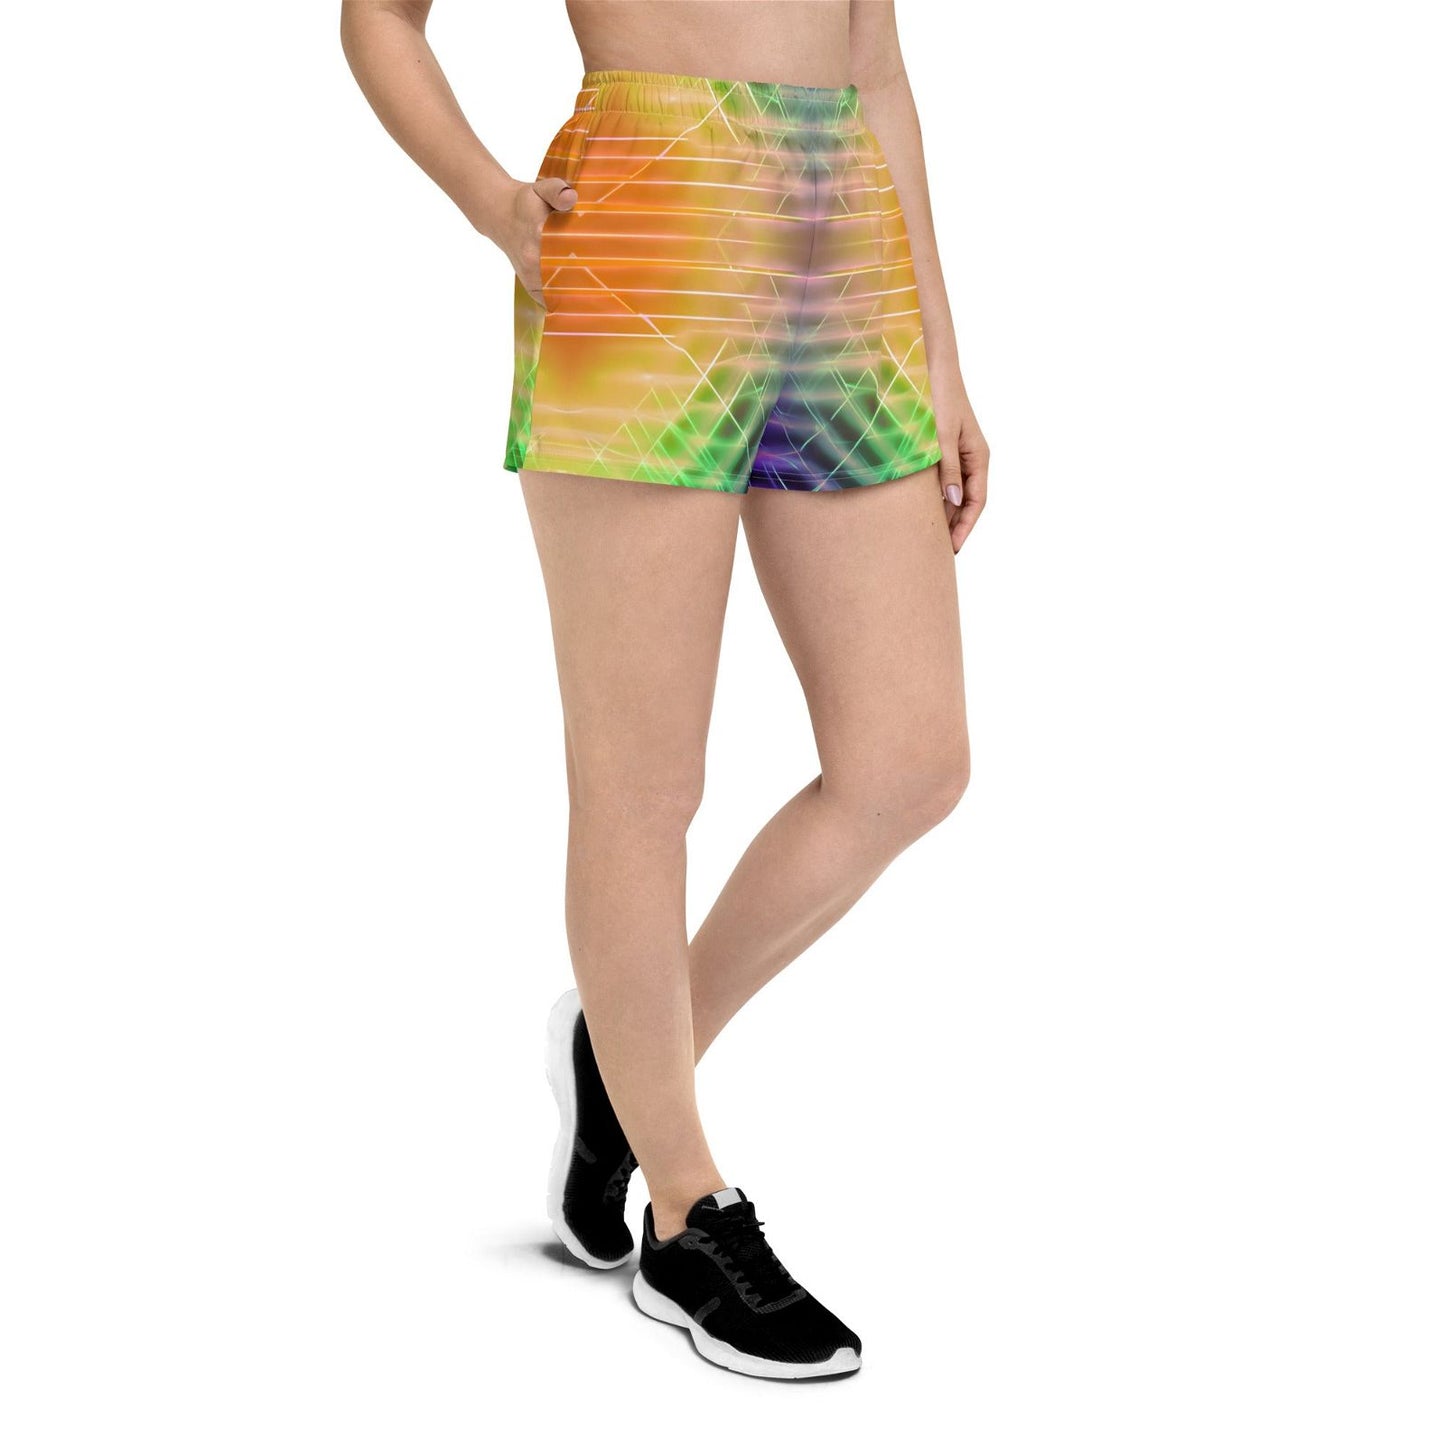 Stylish Purple and Yellow Womens Shorts - Eco-Friendly - Iron Phoenix GHG